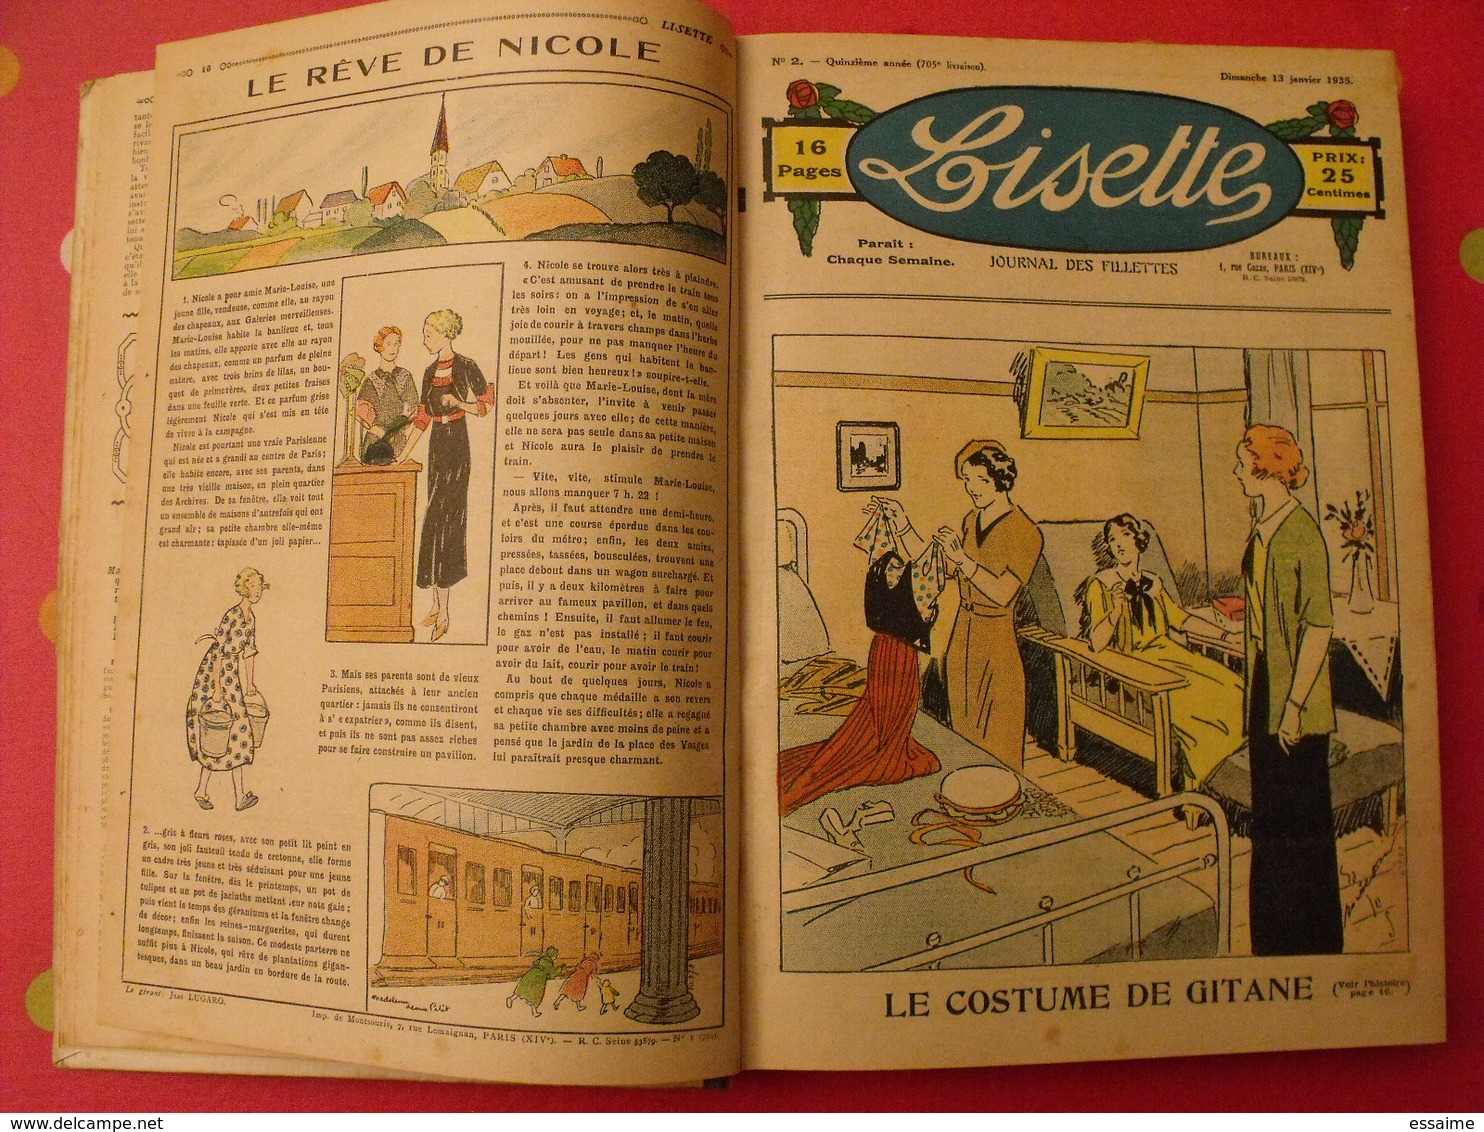 Lisette, album 16 XVI. 1935. recueil reliure. le rallic levesque maitrejean cuvillier bourdin dot